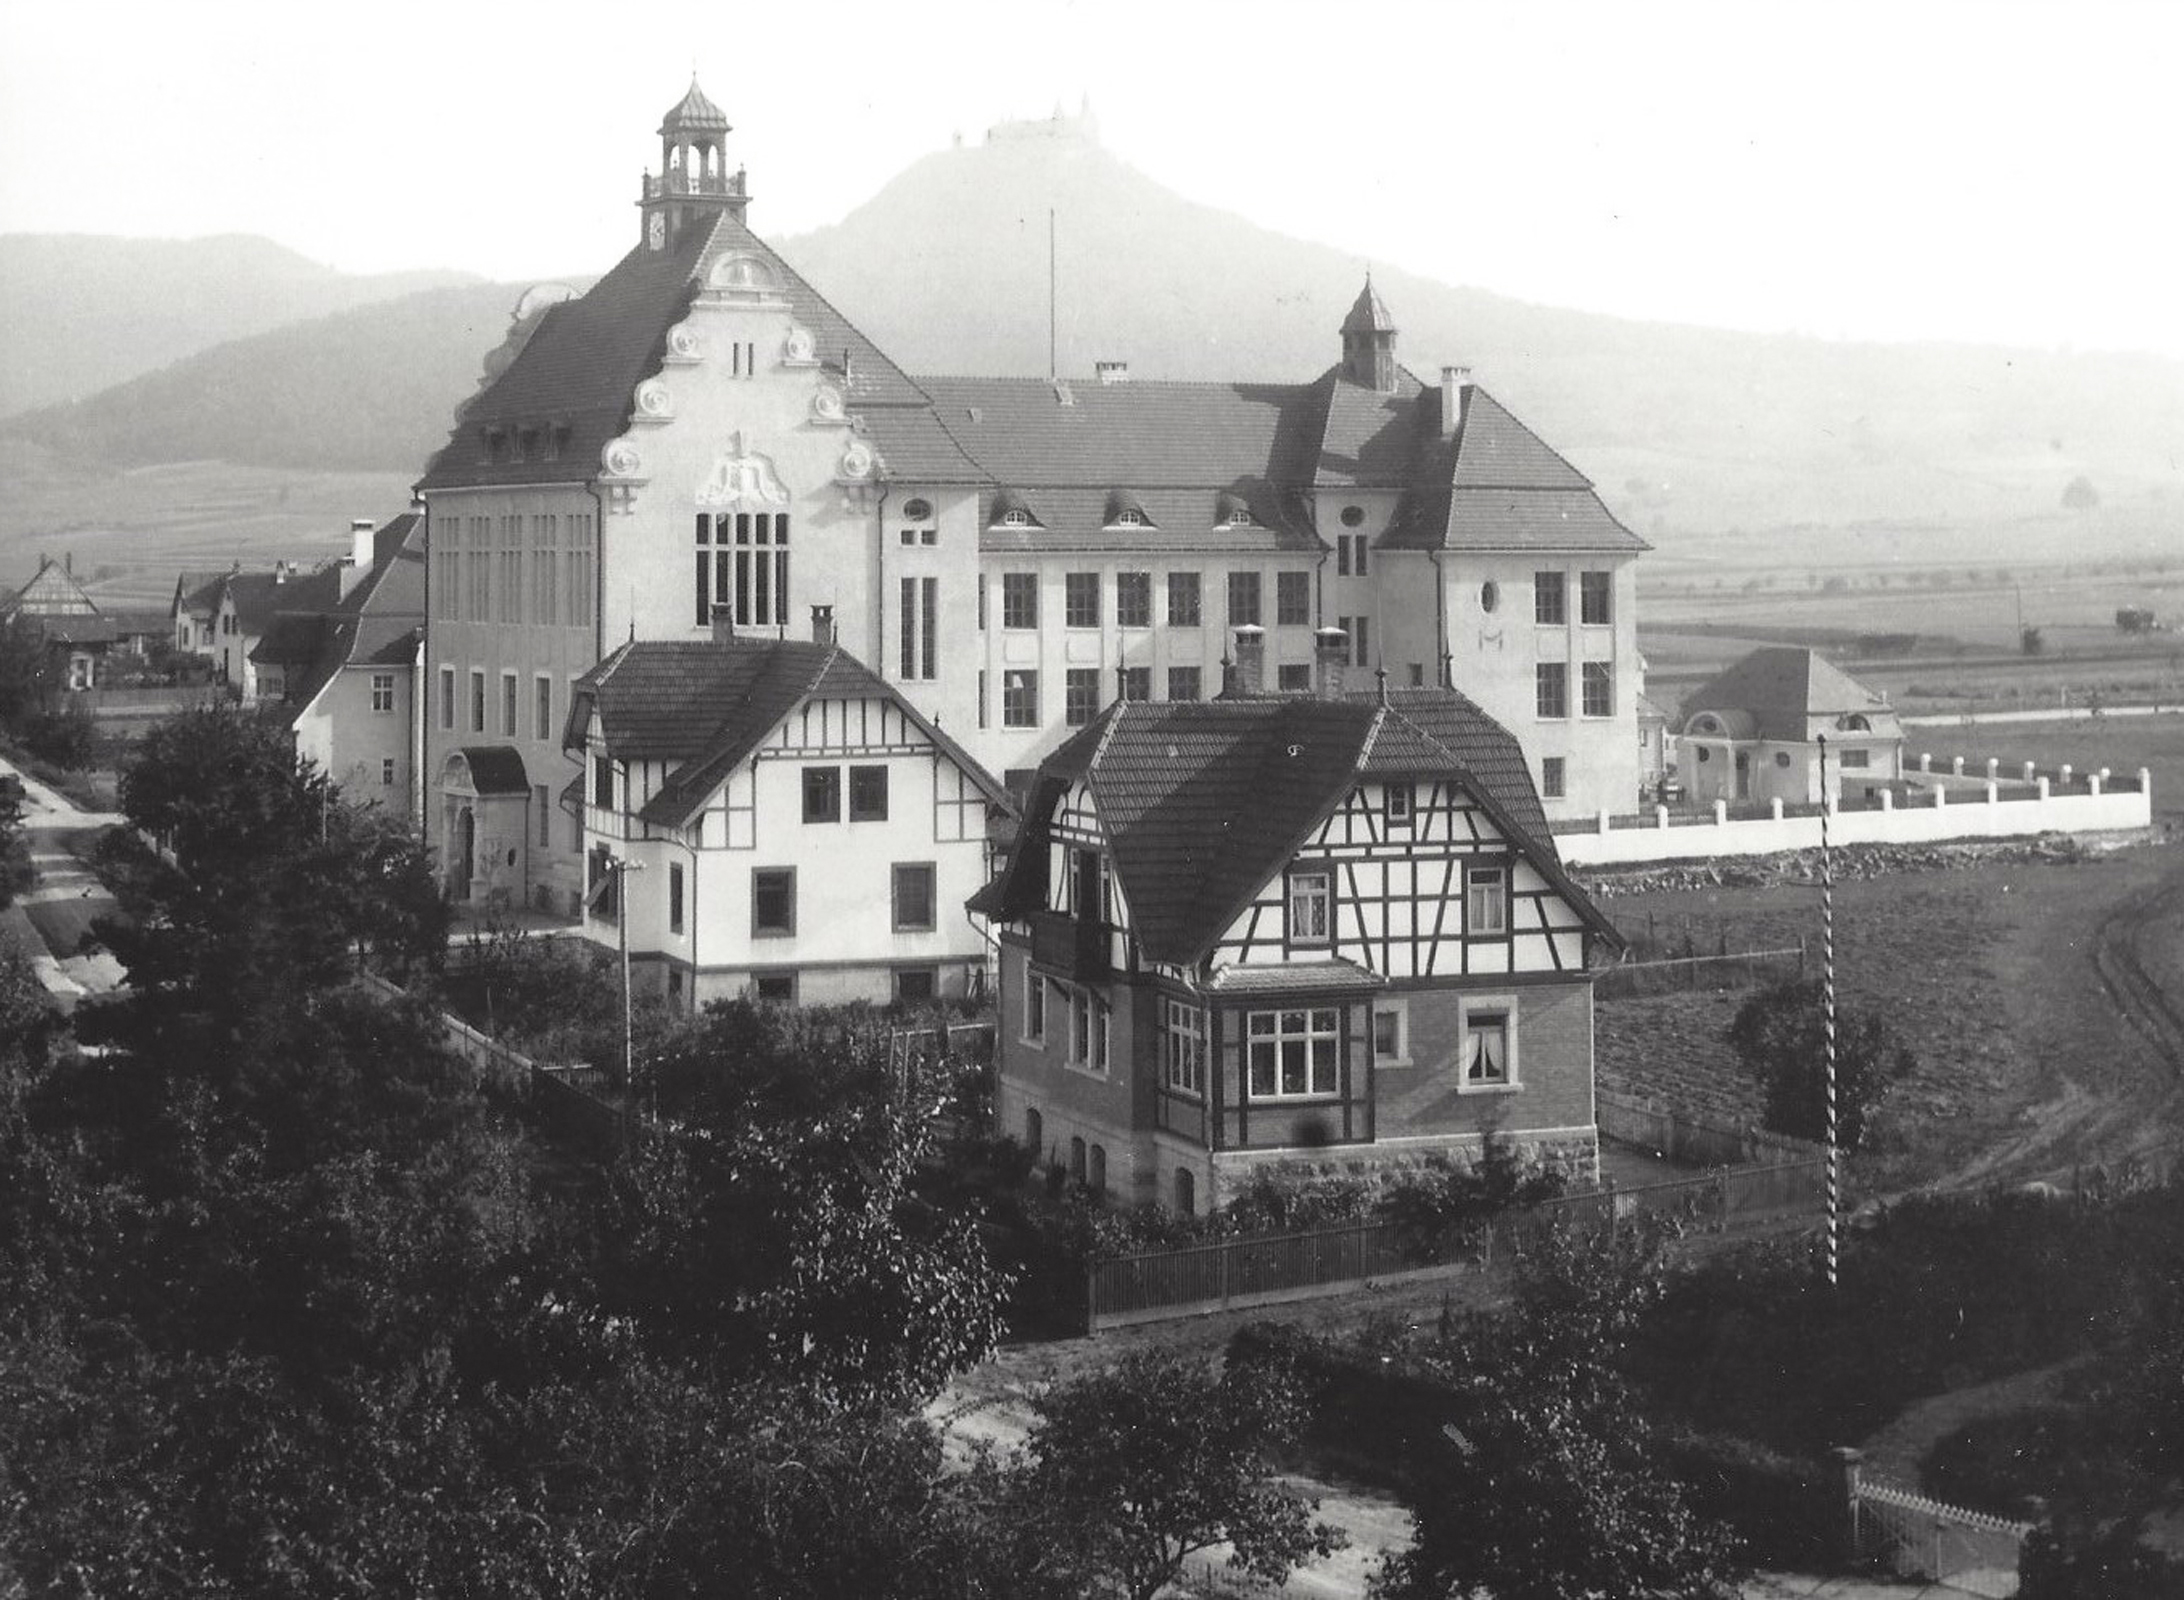 The Hechingen High School